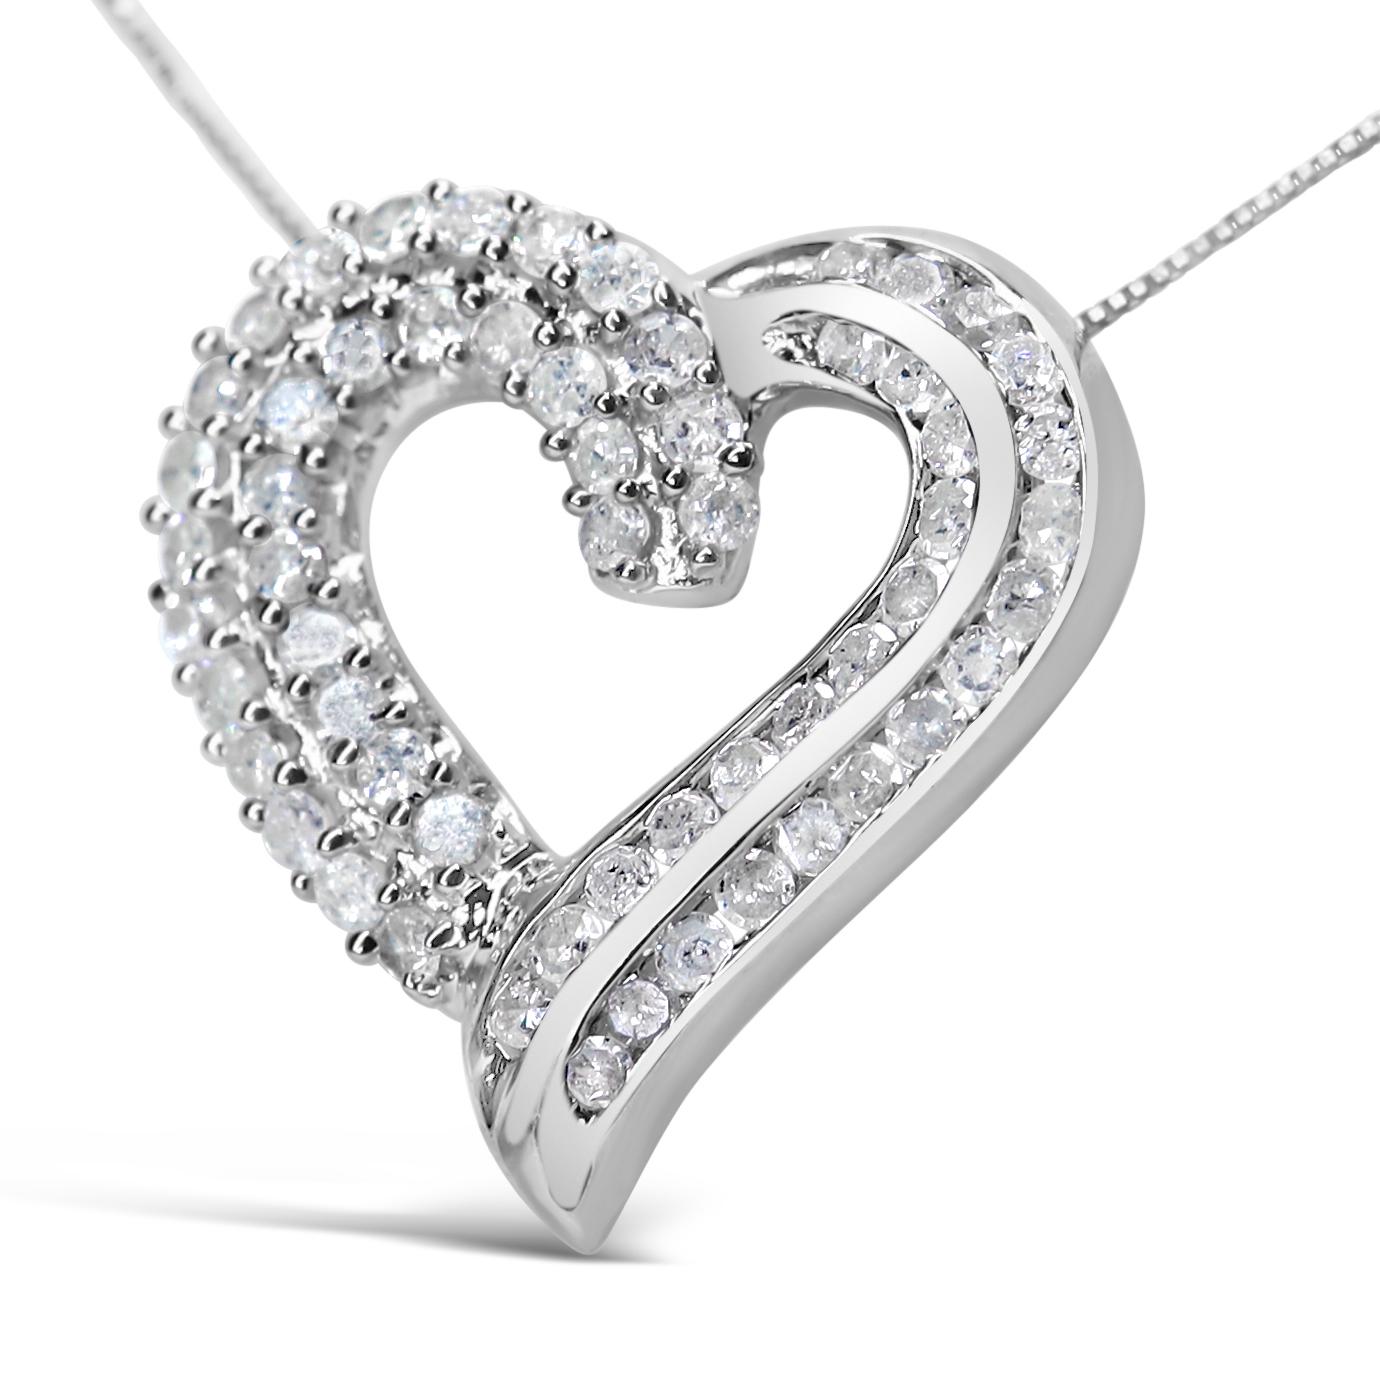 Ce collier à pendentif sensationnel vous mettra dans un état d'esprit romantique, car sa silhouette de cœur ajouré scintille de diamants ronds ! Le design saisissant rayonne de beauté grâce aux rubans sculptés de diamants sertis en canal sur deux